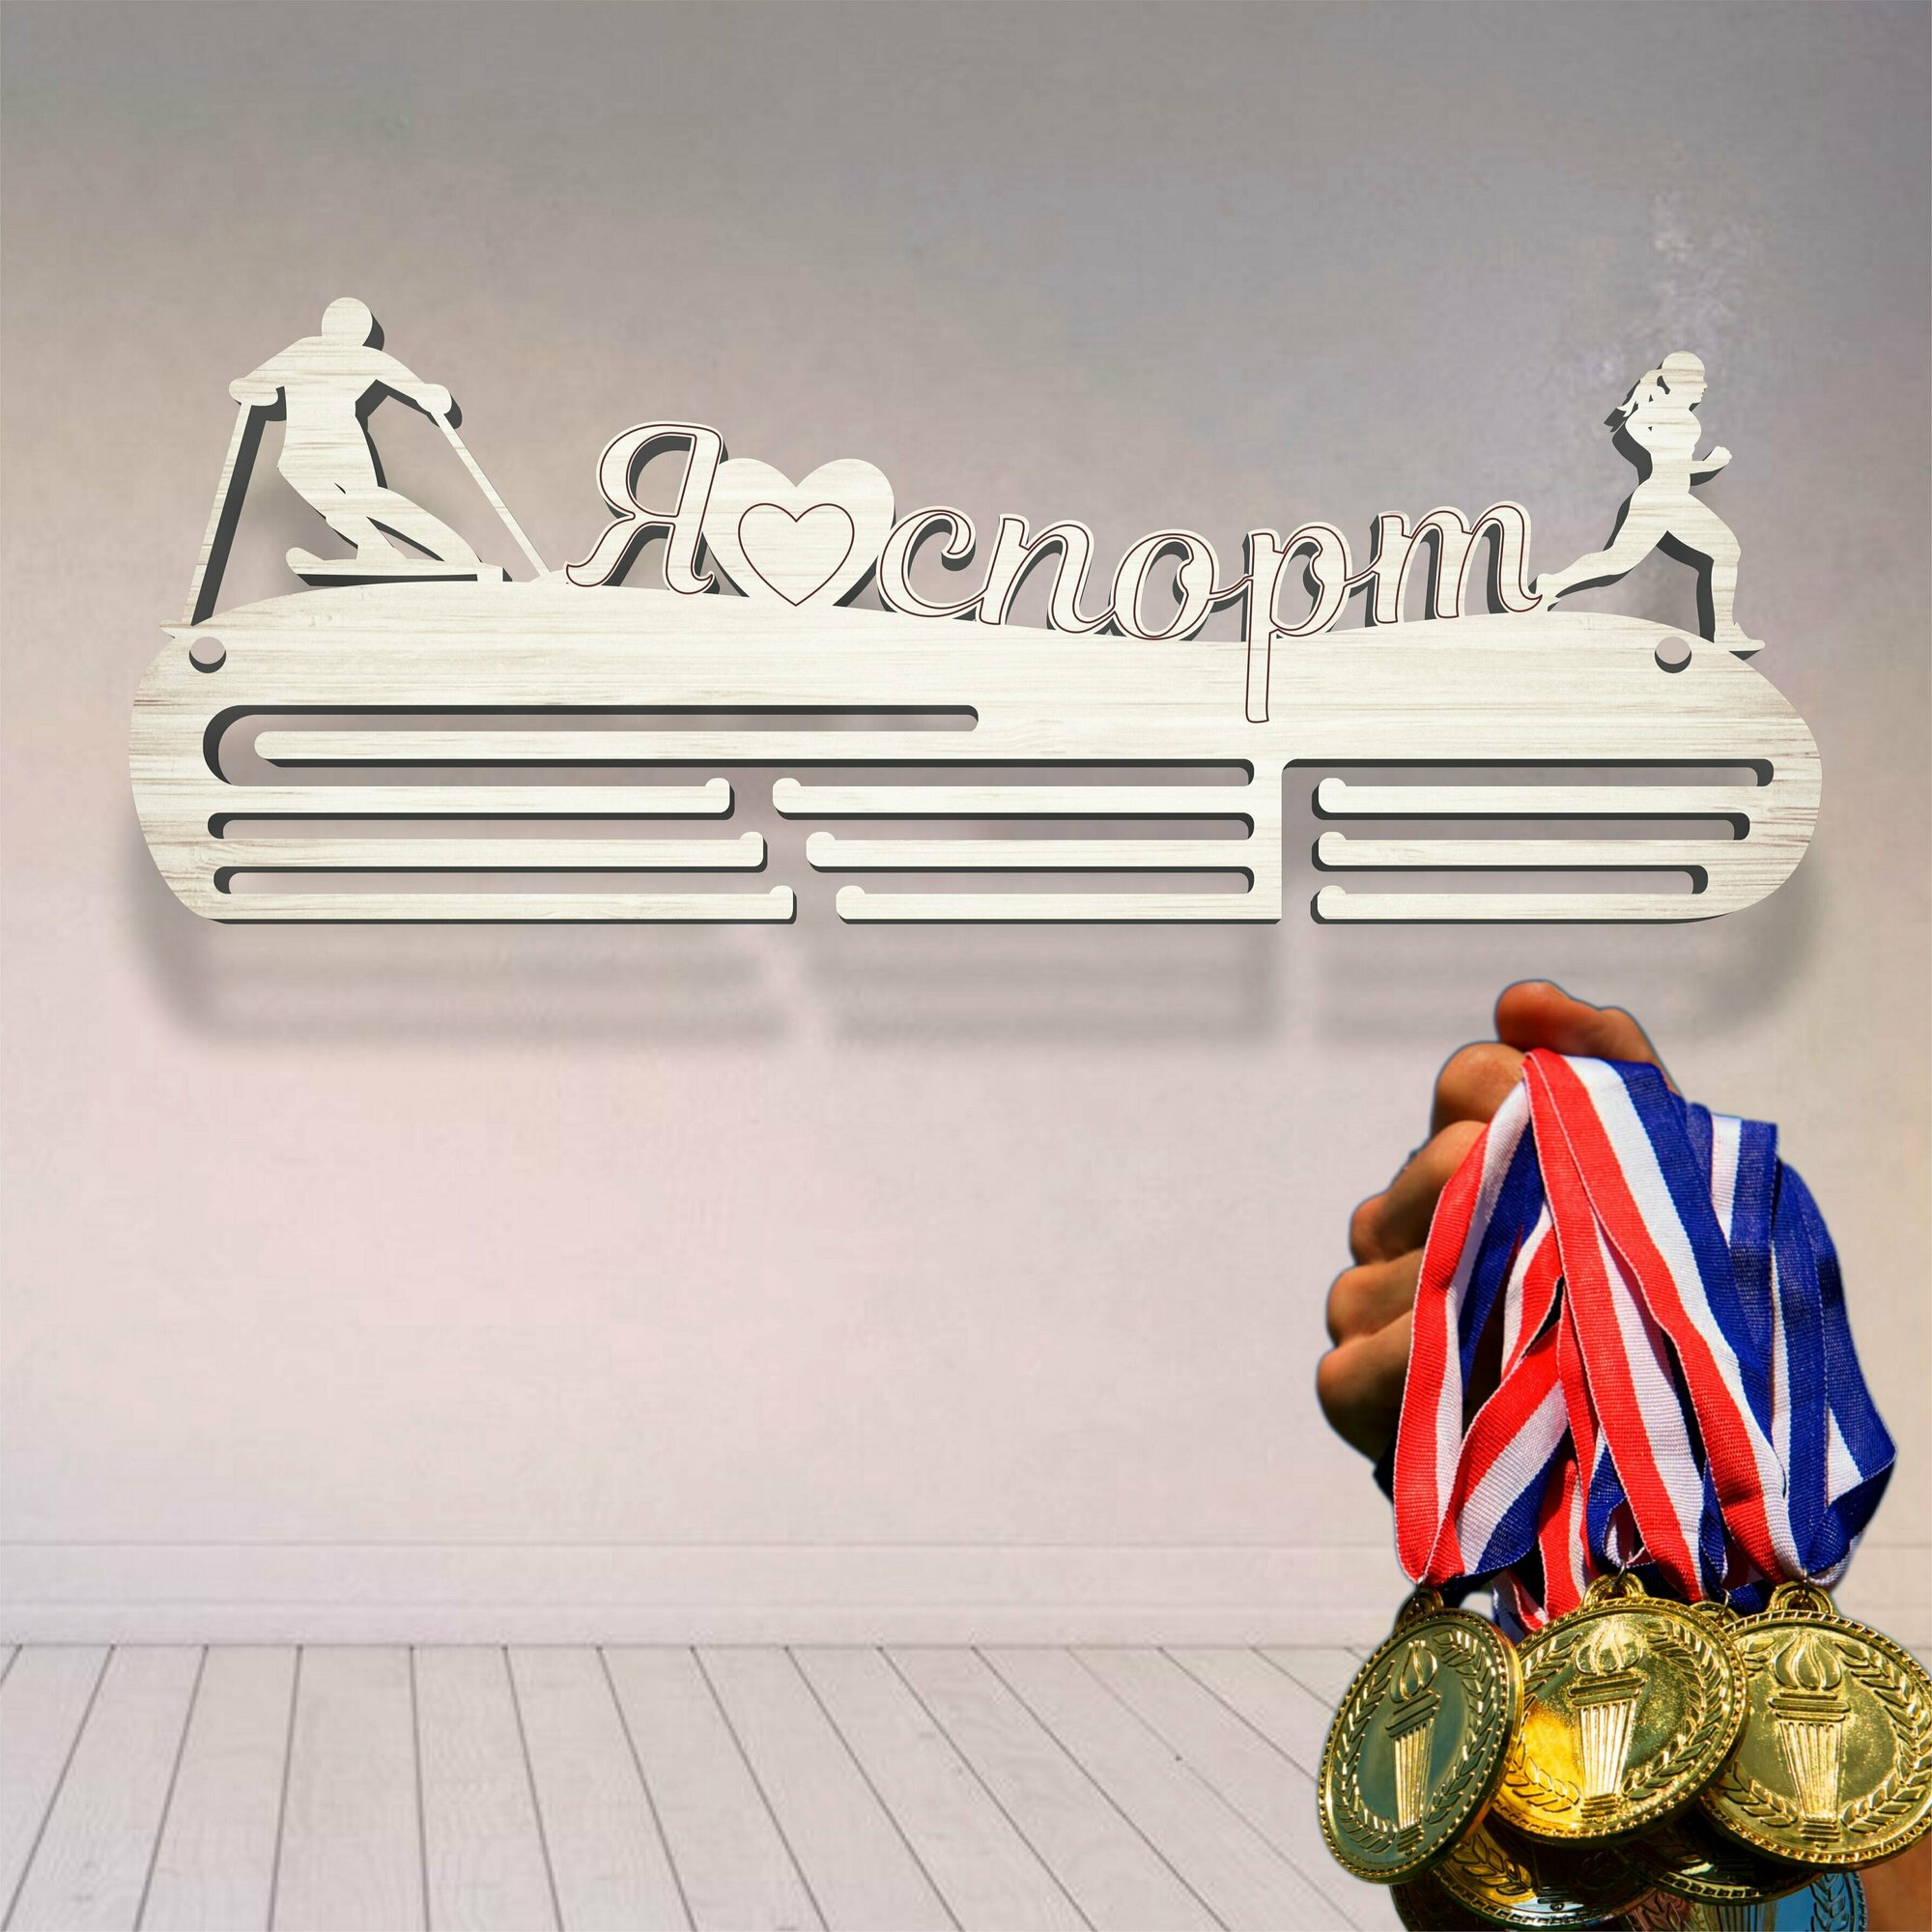 Медальница "Я люблю спорт" / спортивная медальница / медаллер / держатель для медалей / фанера 3 мм / 50 х 18 см / ECO товар